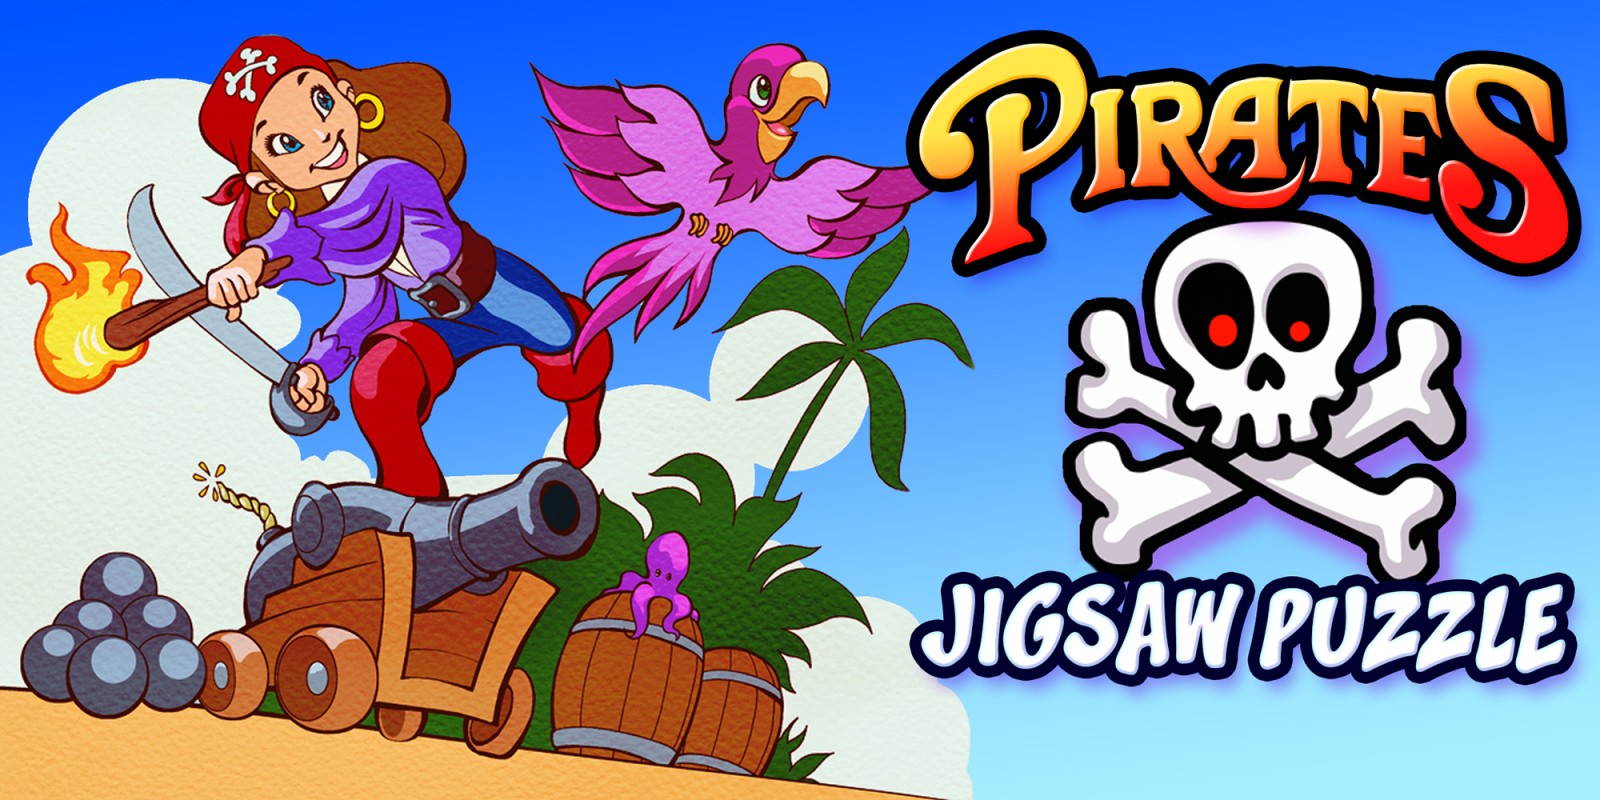 Pirates Jigsaw Puzzle - Piratas quebra-cabeça educação aventura aprendendo quebra-cabeças para crianças jogos e bebês